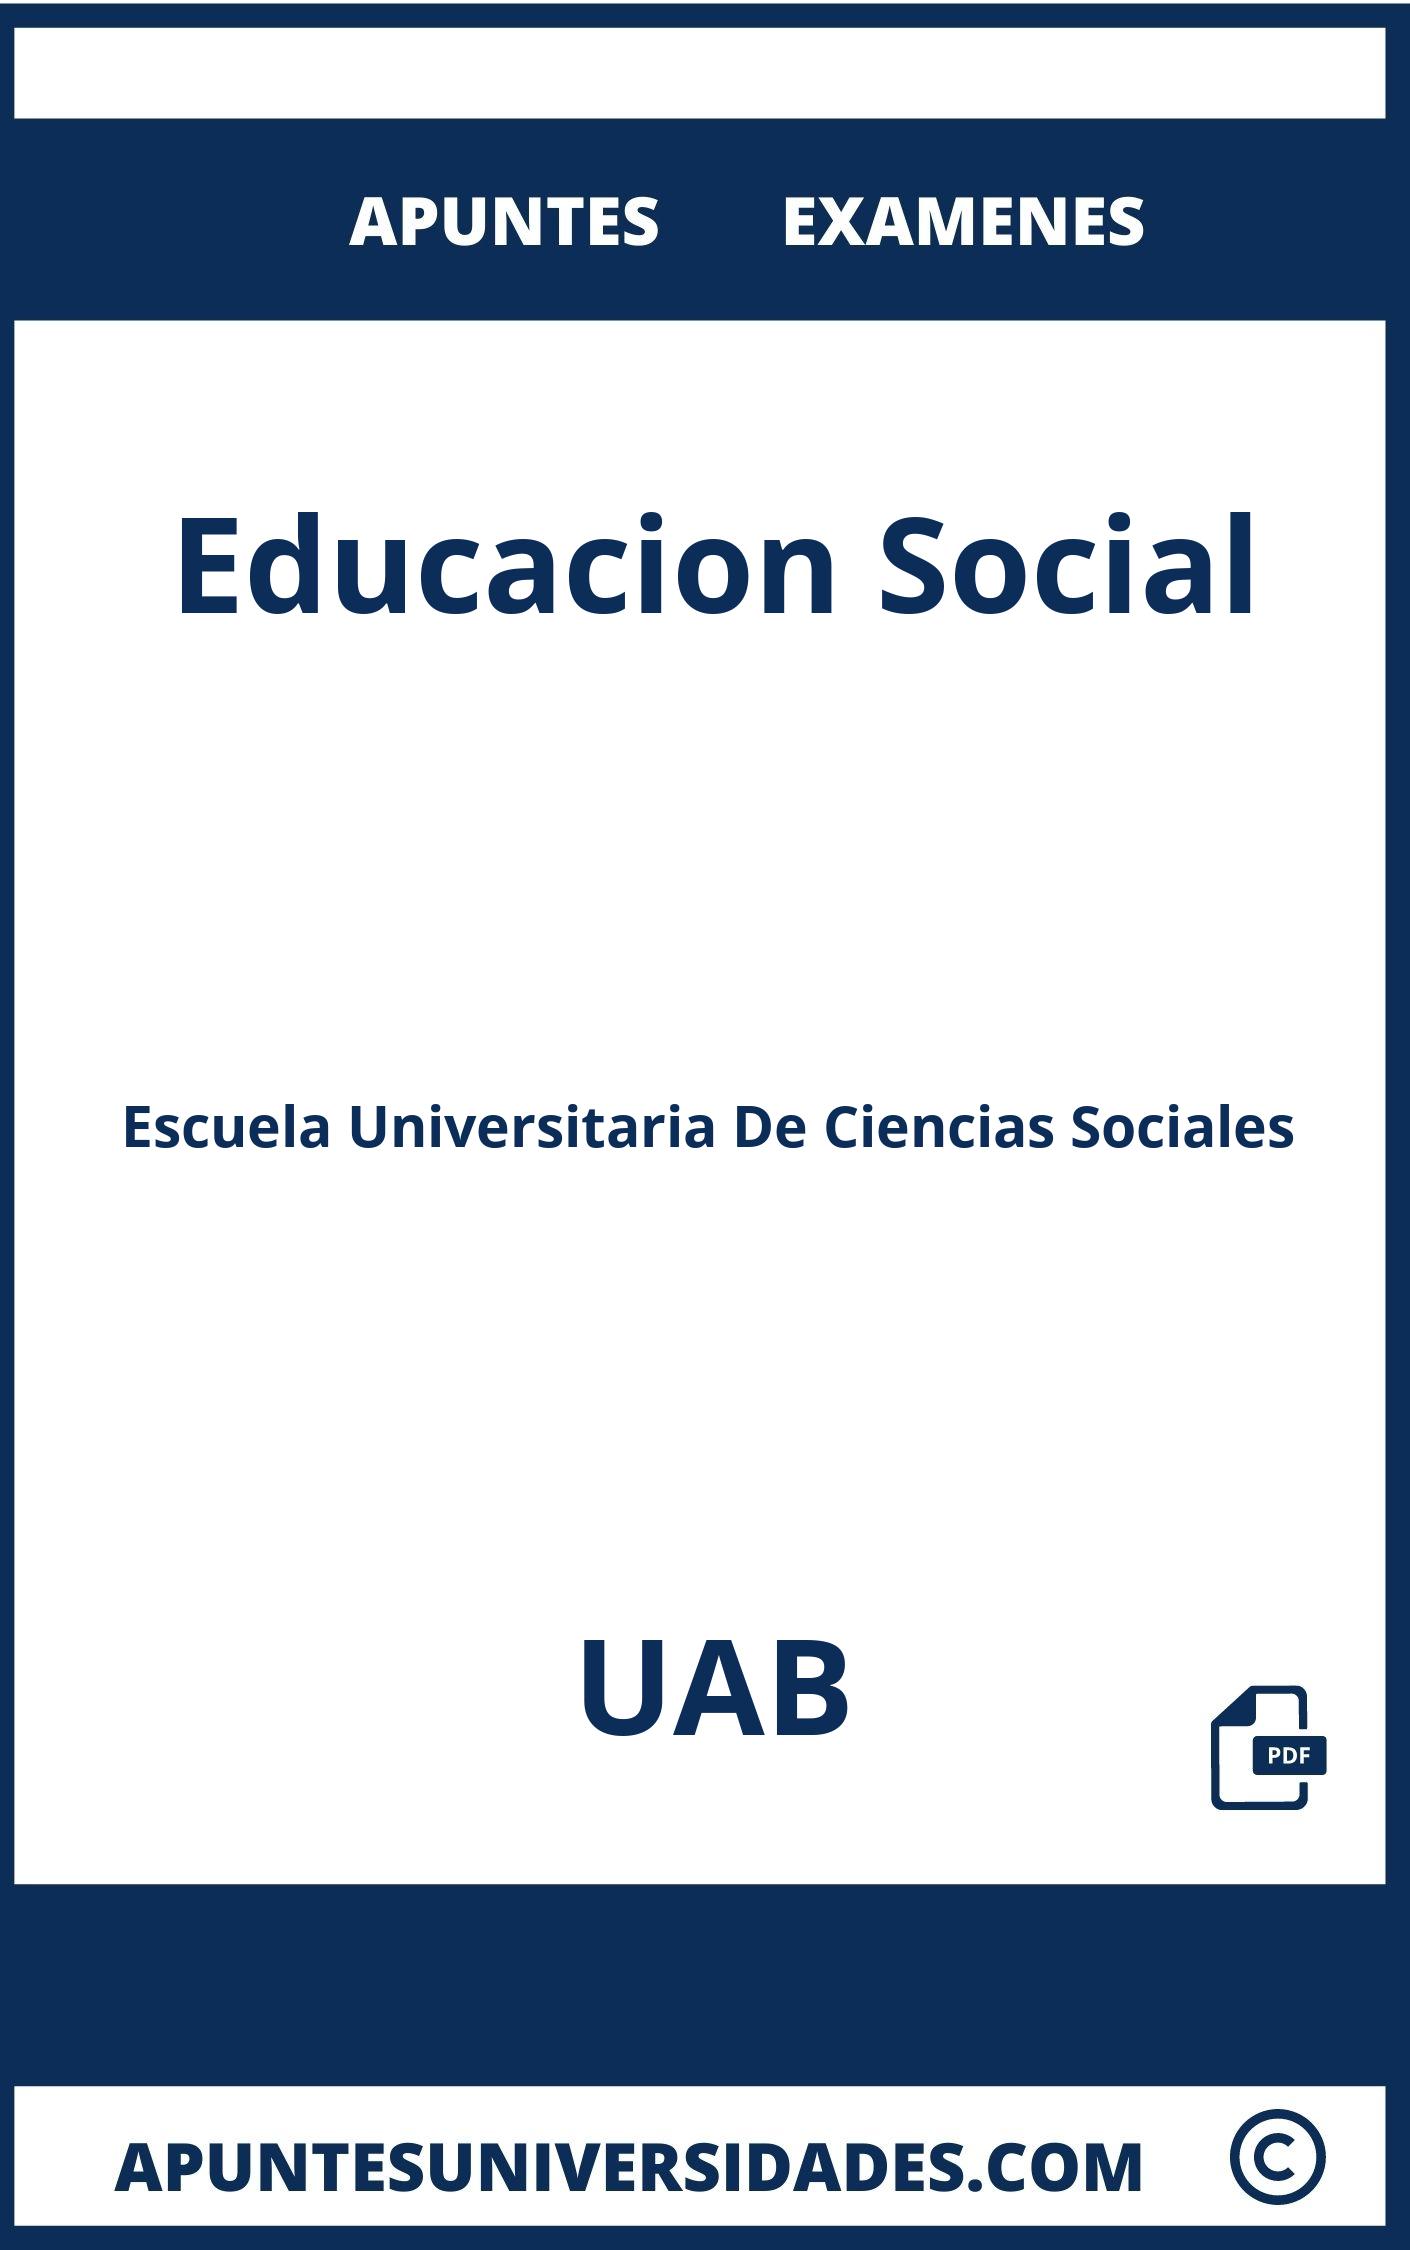 Apuntes y Examenes Educacion Social UAB